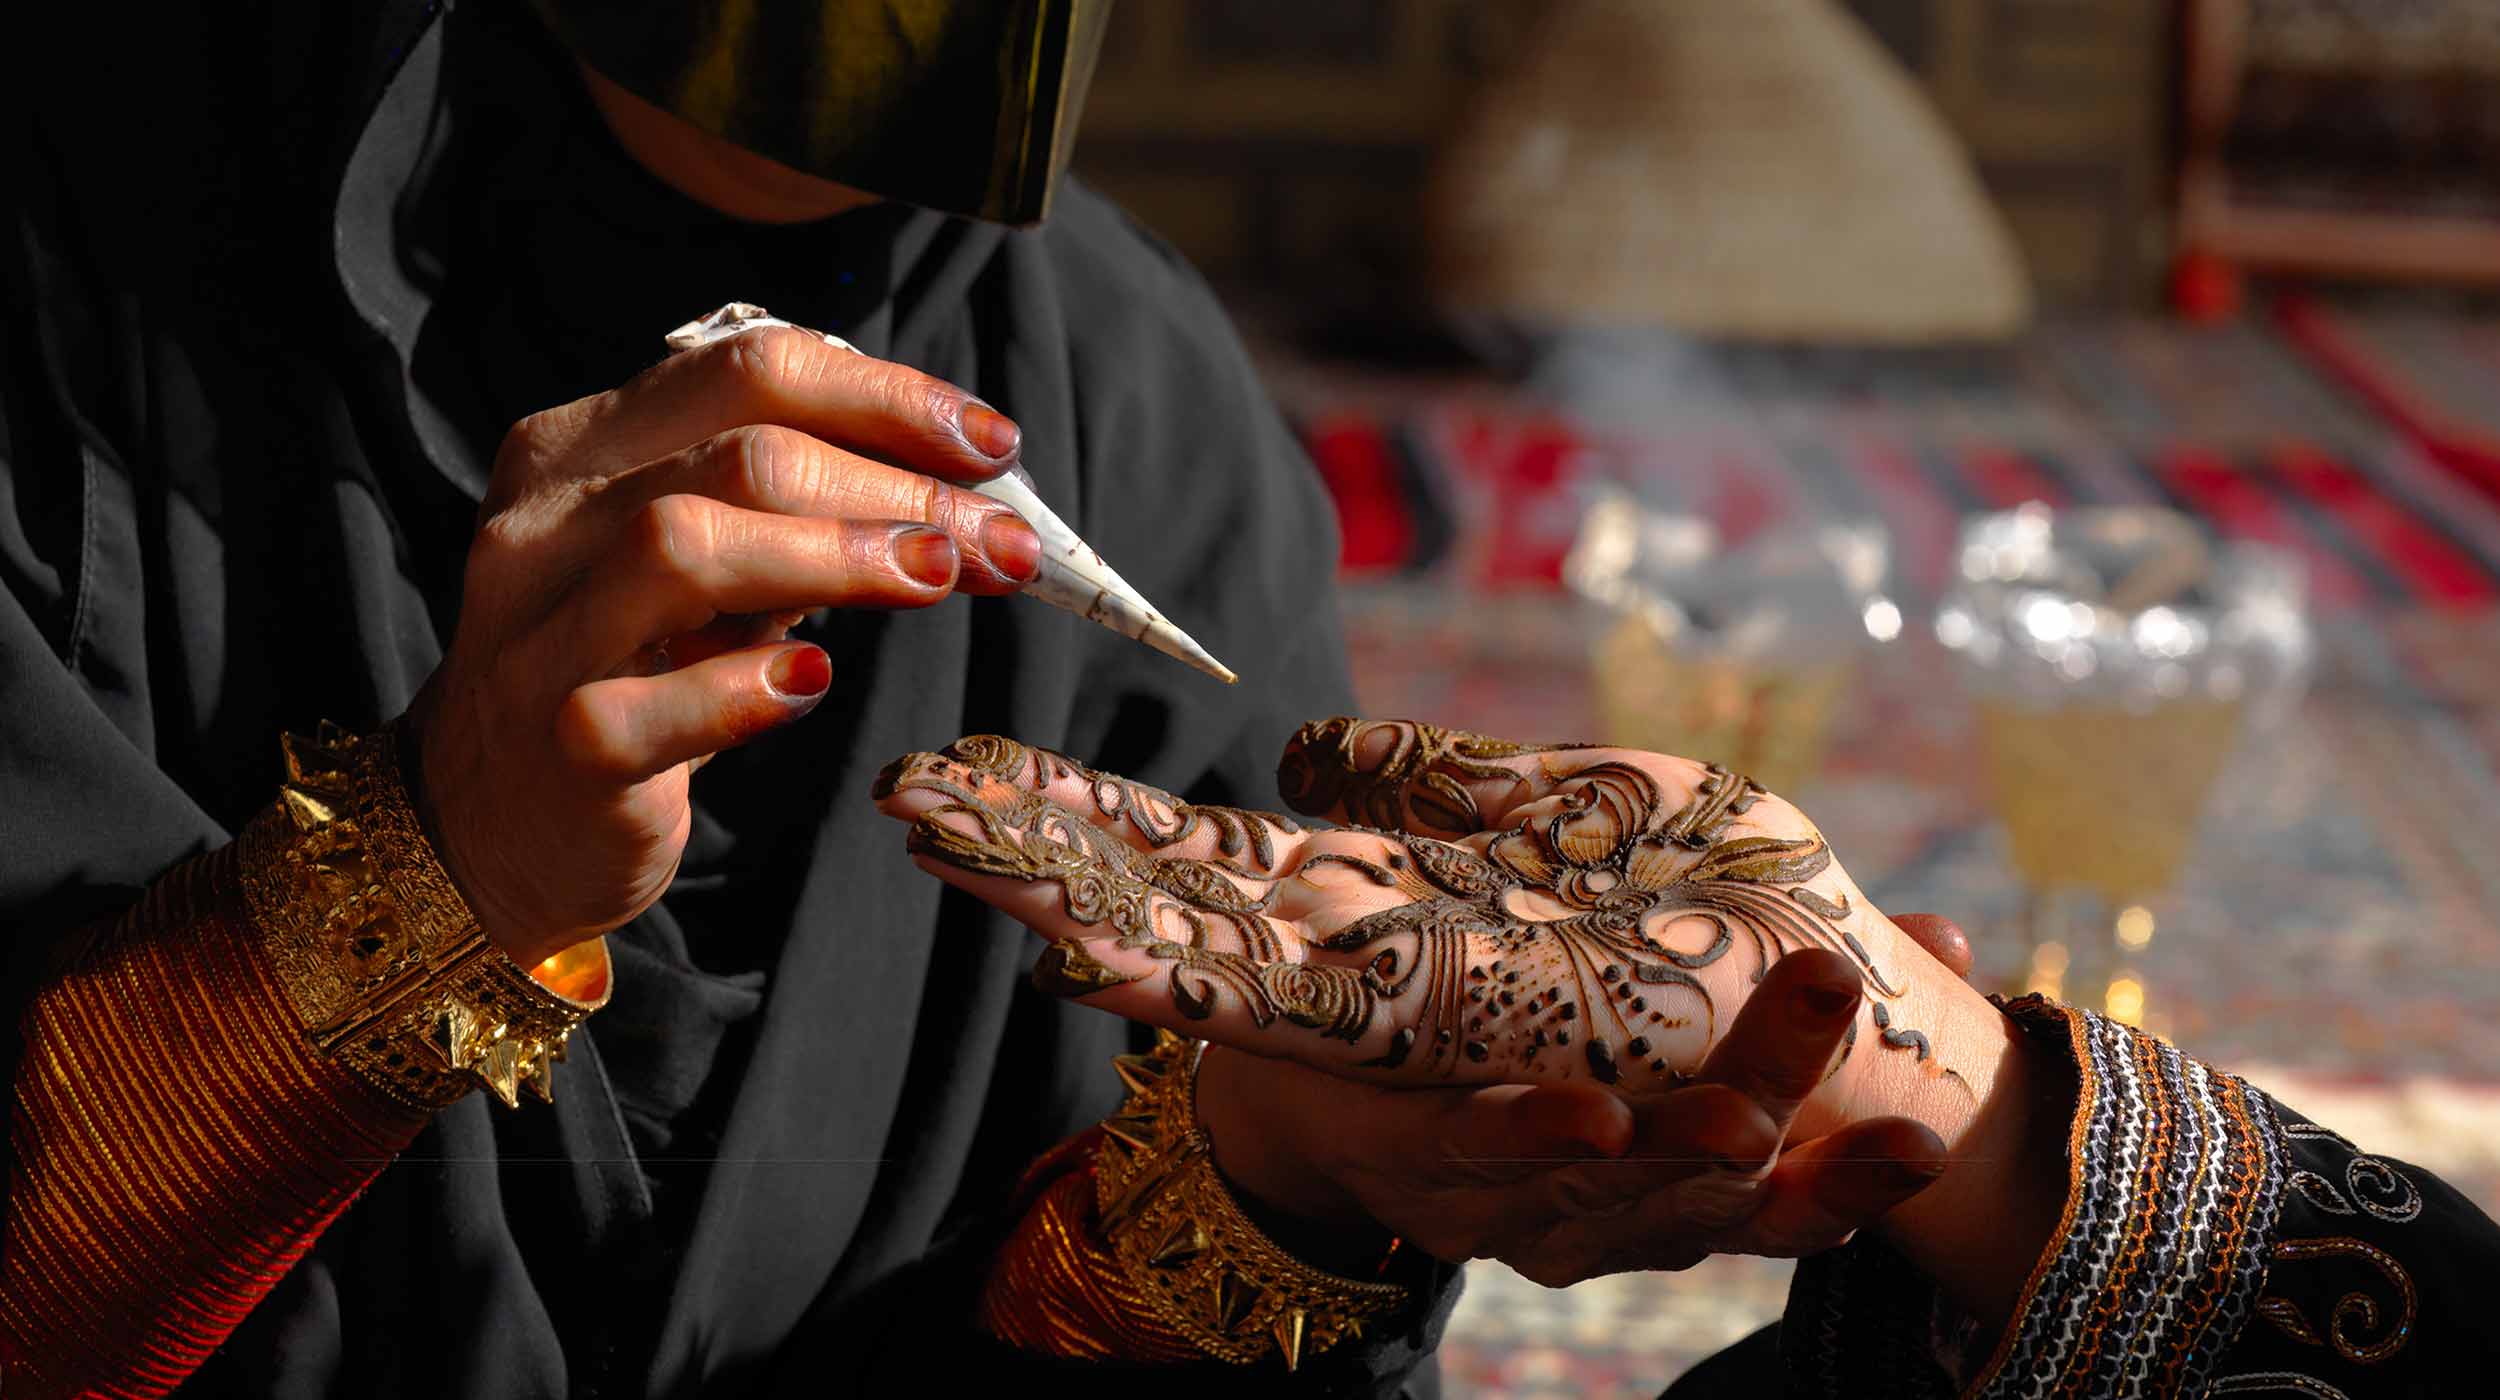 Gros plan de la main d'une femme avec le henné des cultures indiennes et indigènes, travaillant de manière créative.